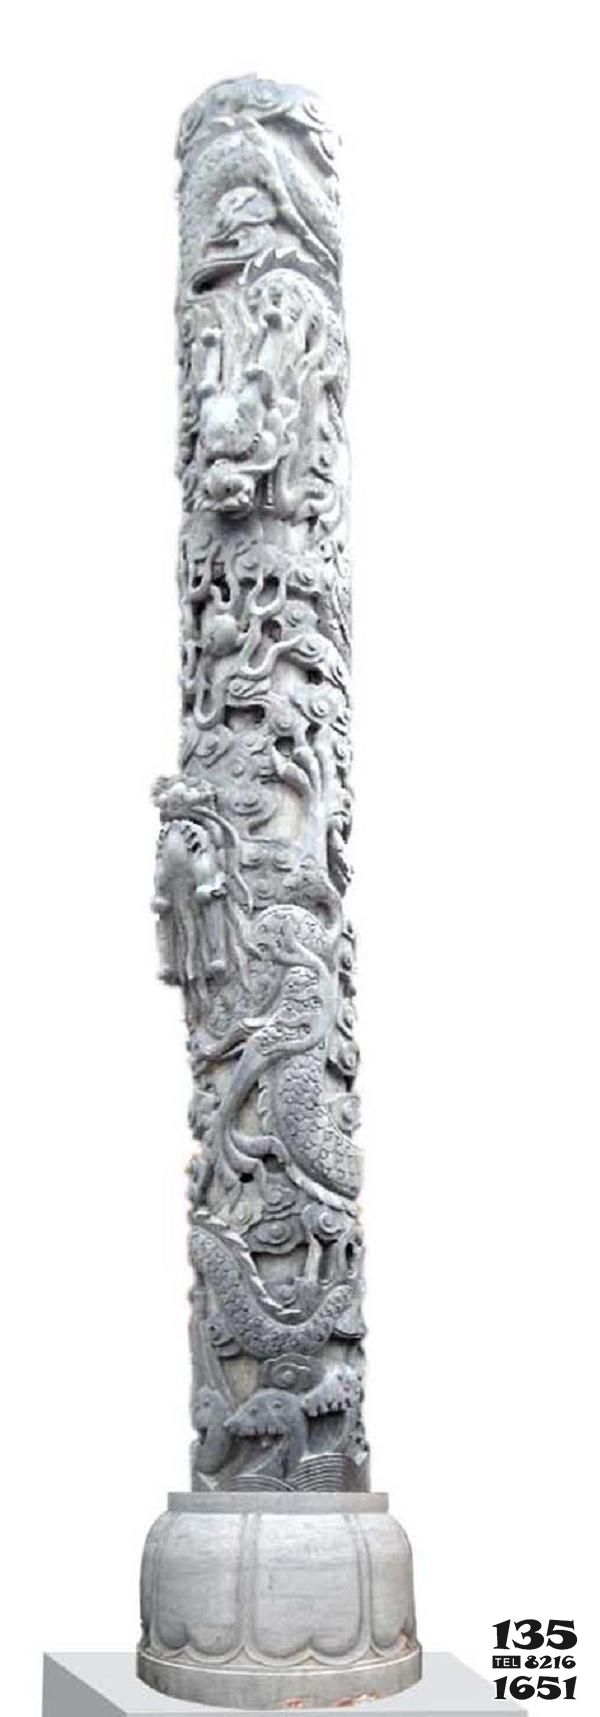 华表雕塑-石雕龙柱大型华表柱子雕刻 广场公园摆件高清图片